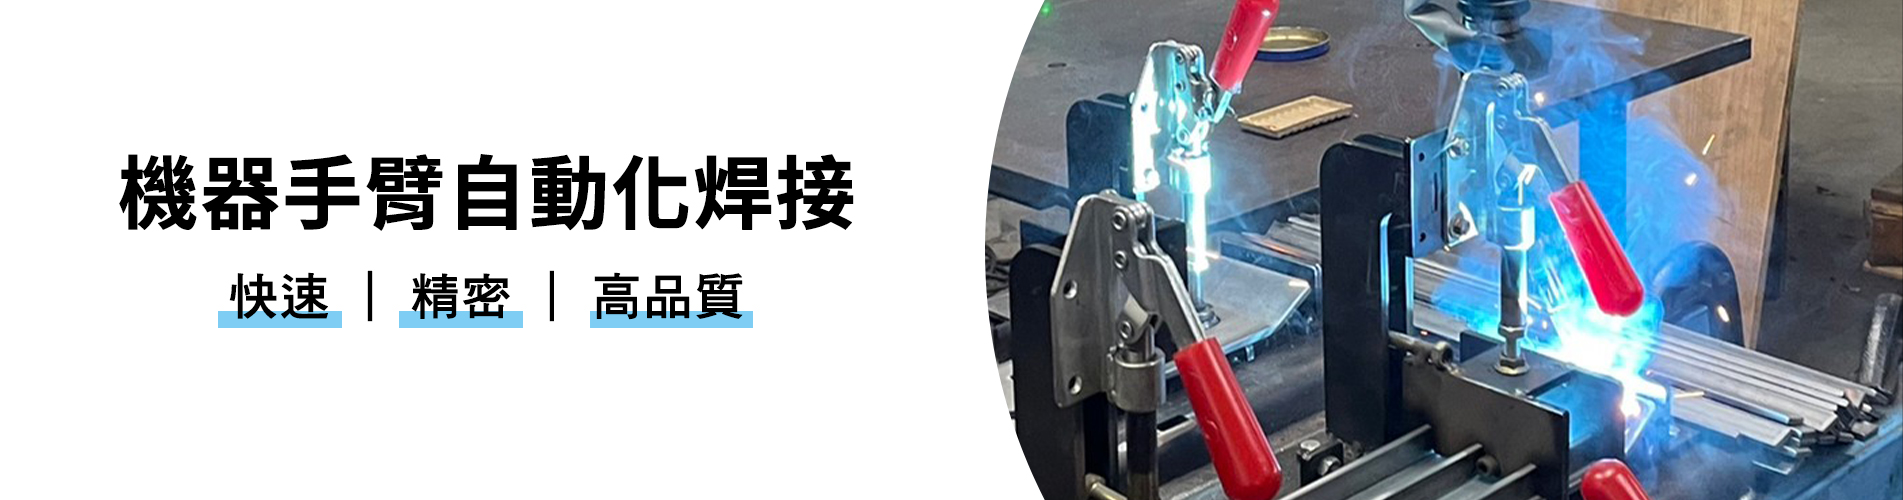 上泓盛有限公司::機器手臂自動化焊接,自動化,焊接,自動化焊接,機器手臂,金屬焊接